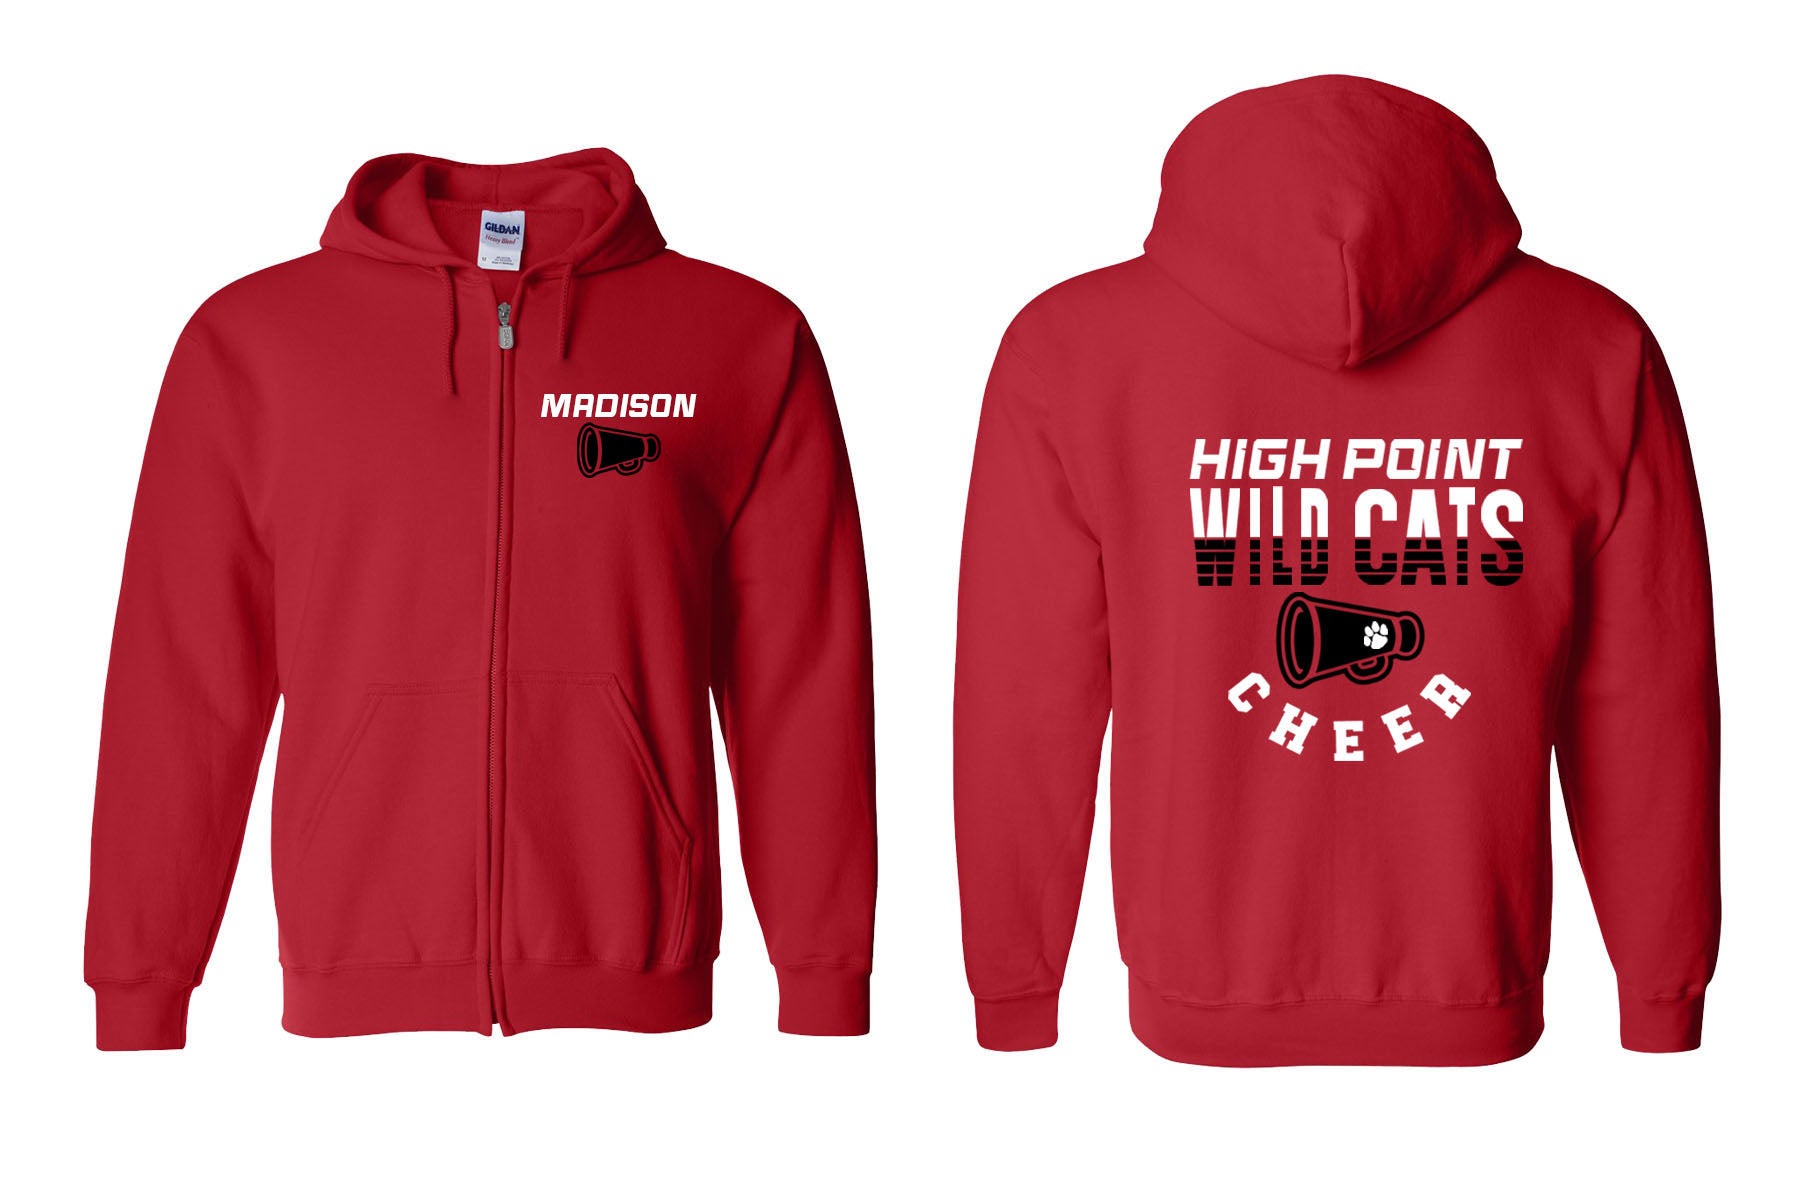 Wildcats Cheer design 2 Zip up Sweatshirt